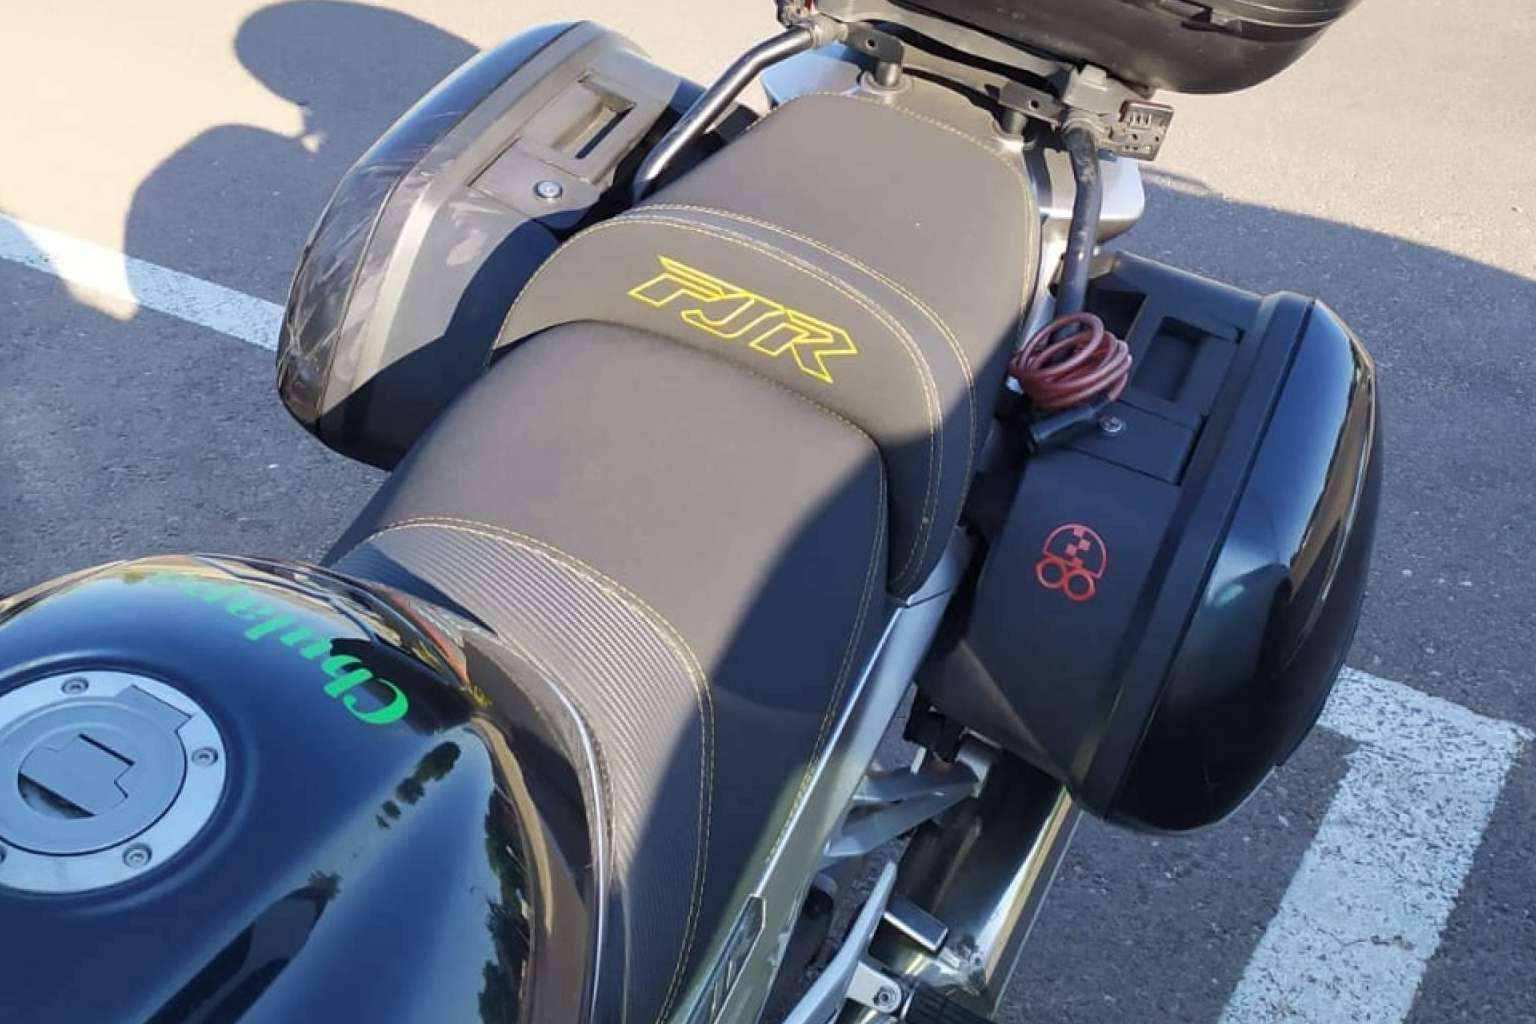  JM-Fundas y su servicio de tapizado de asiento de moto para garantizar viajes cómodos y seguros 